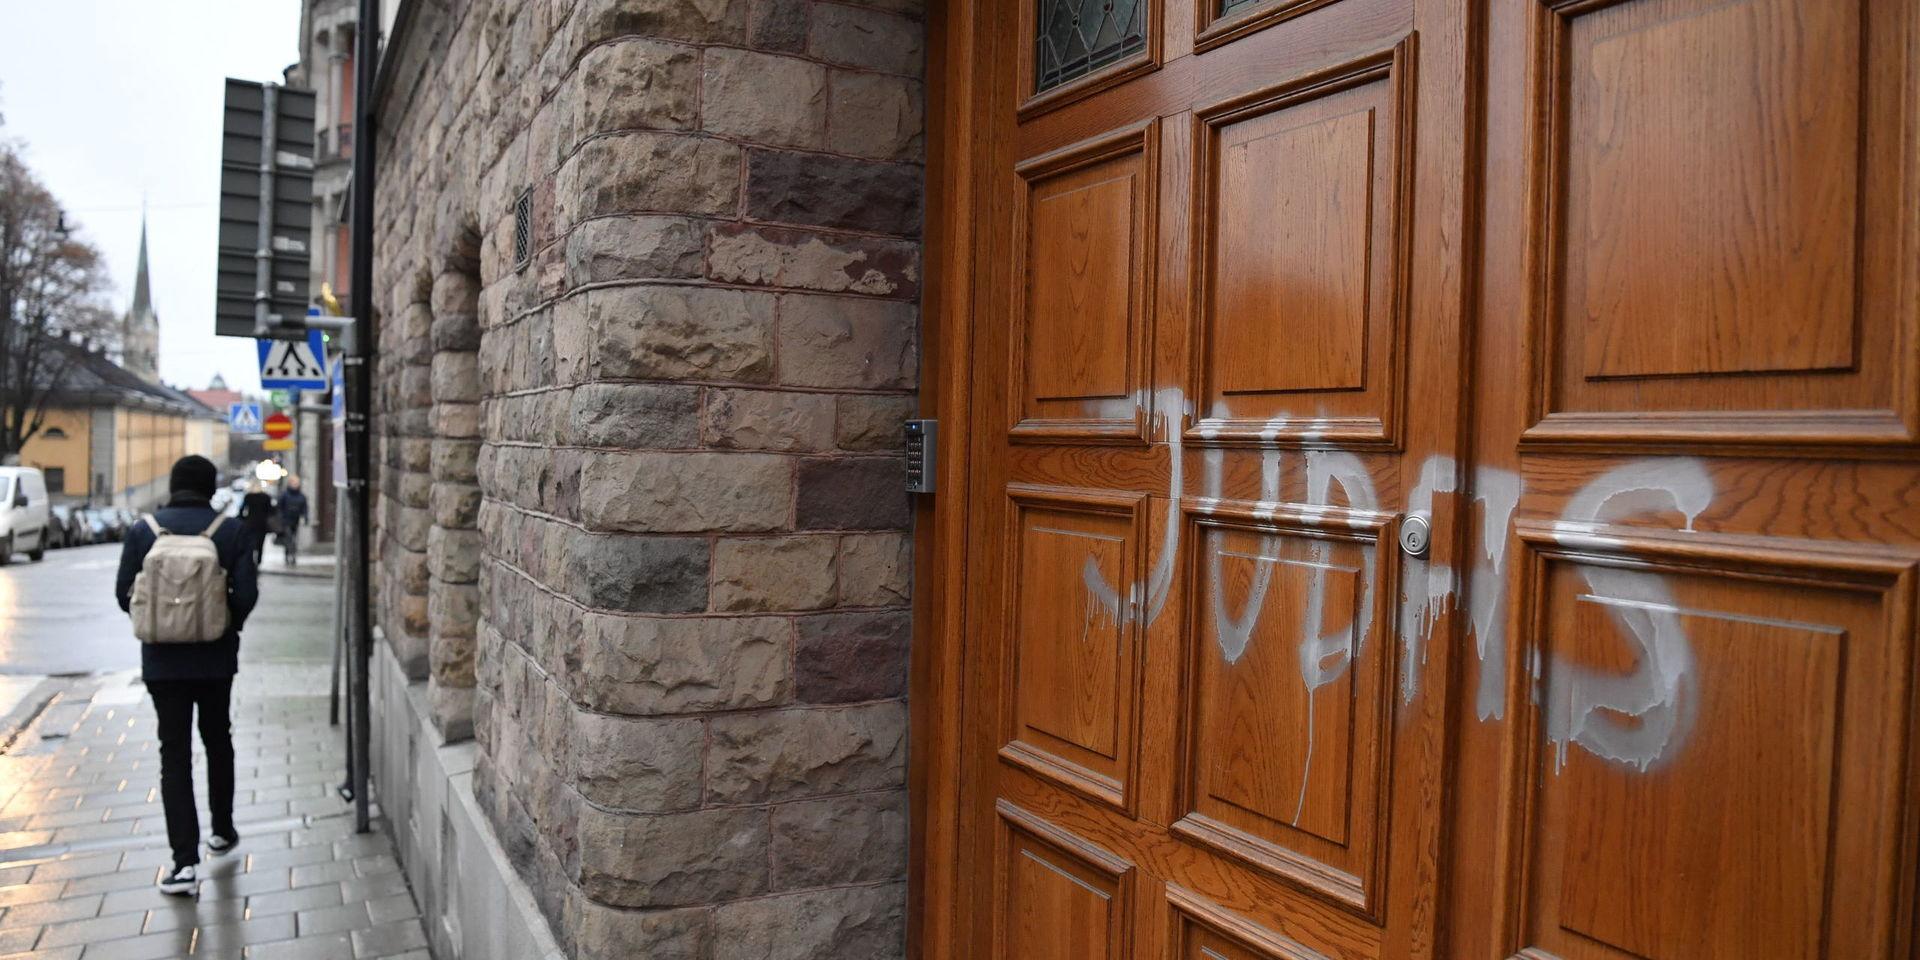 Zlatan Ibrahimovics bostad på Storgatan  i Stockholm har blivit vandaliserad under natten. Någon har sprejar &quot;Judas&quot; på dörren.